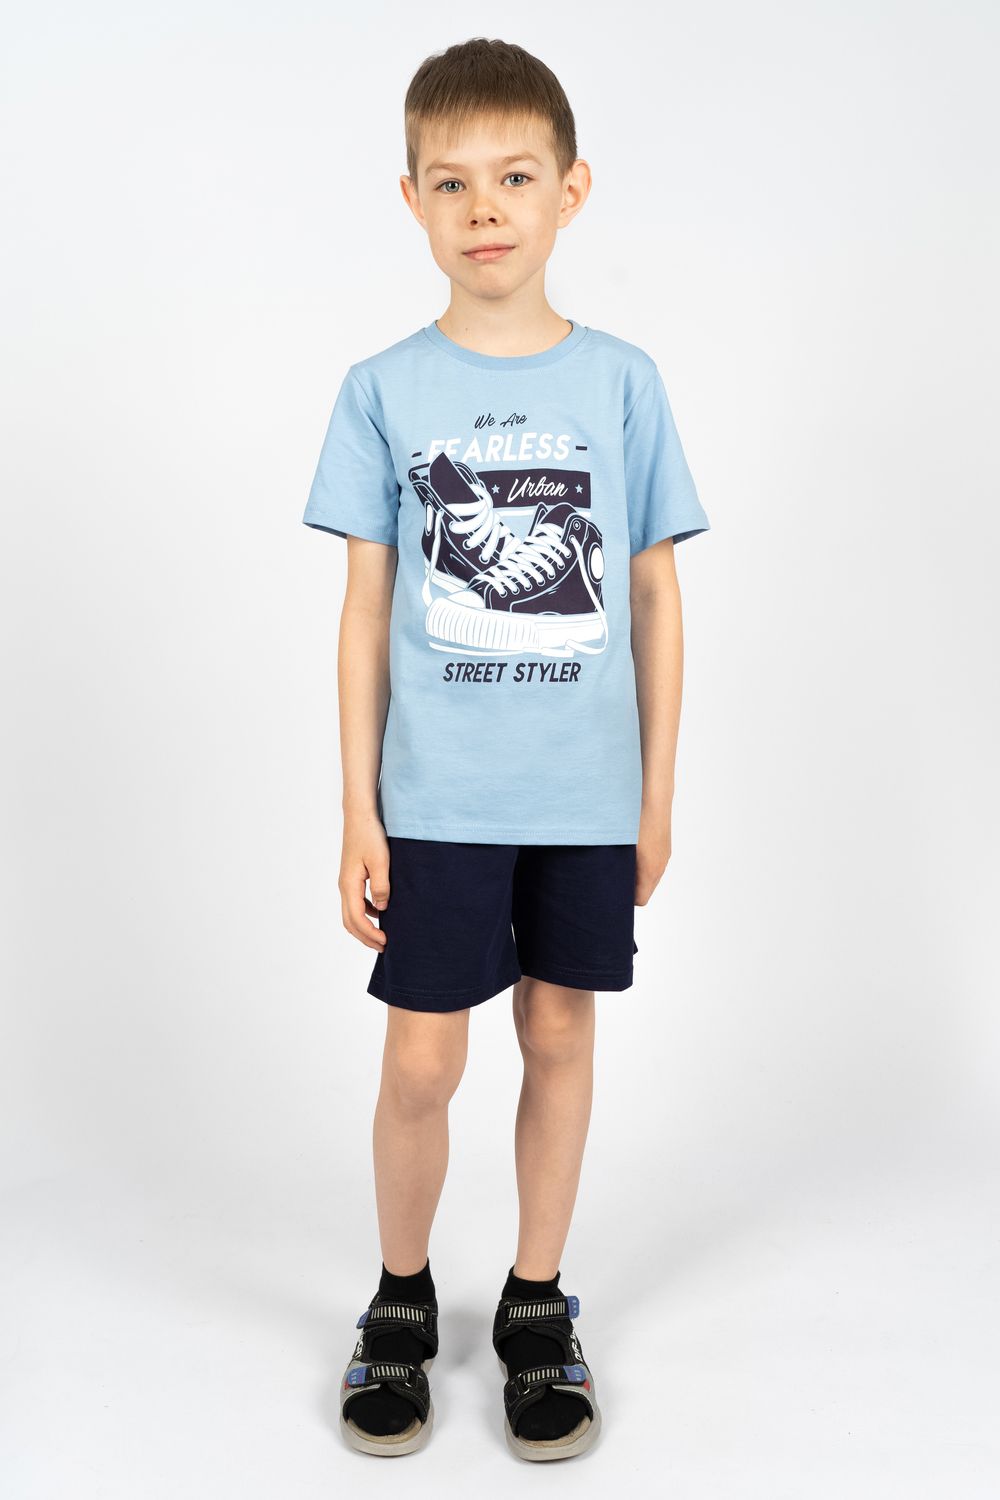 Комплект для мальчика 4293 (футболка + шорты) - я.голубой/т.серый